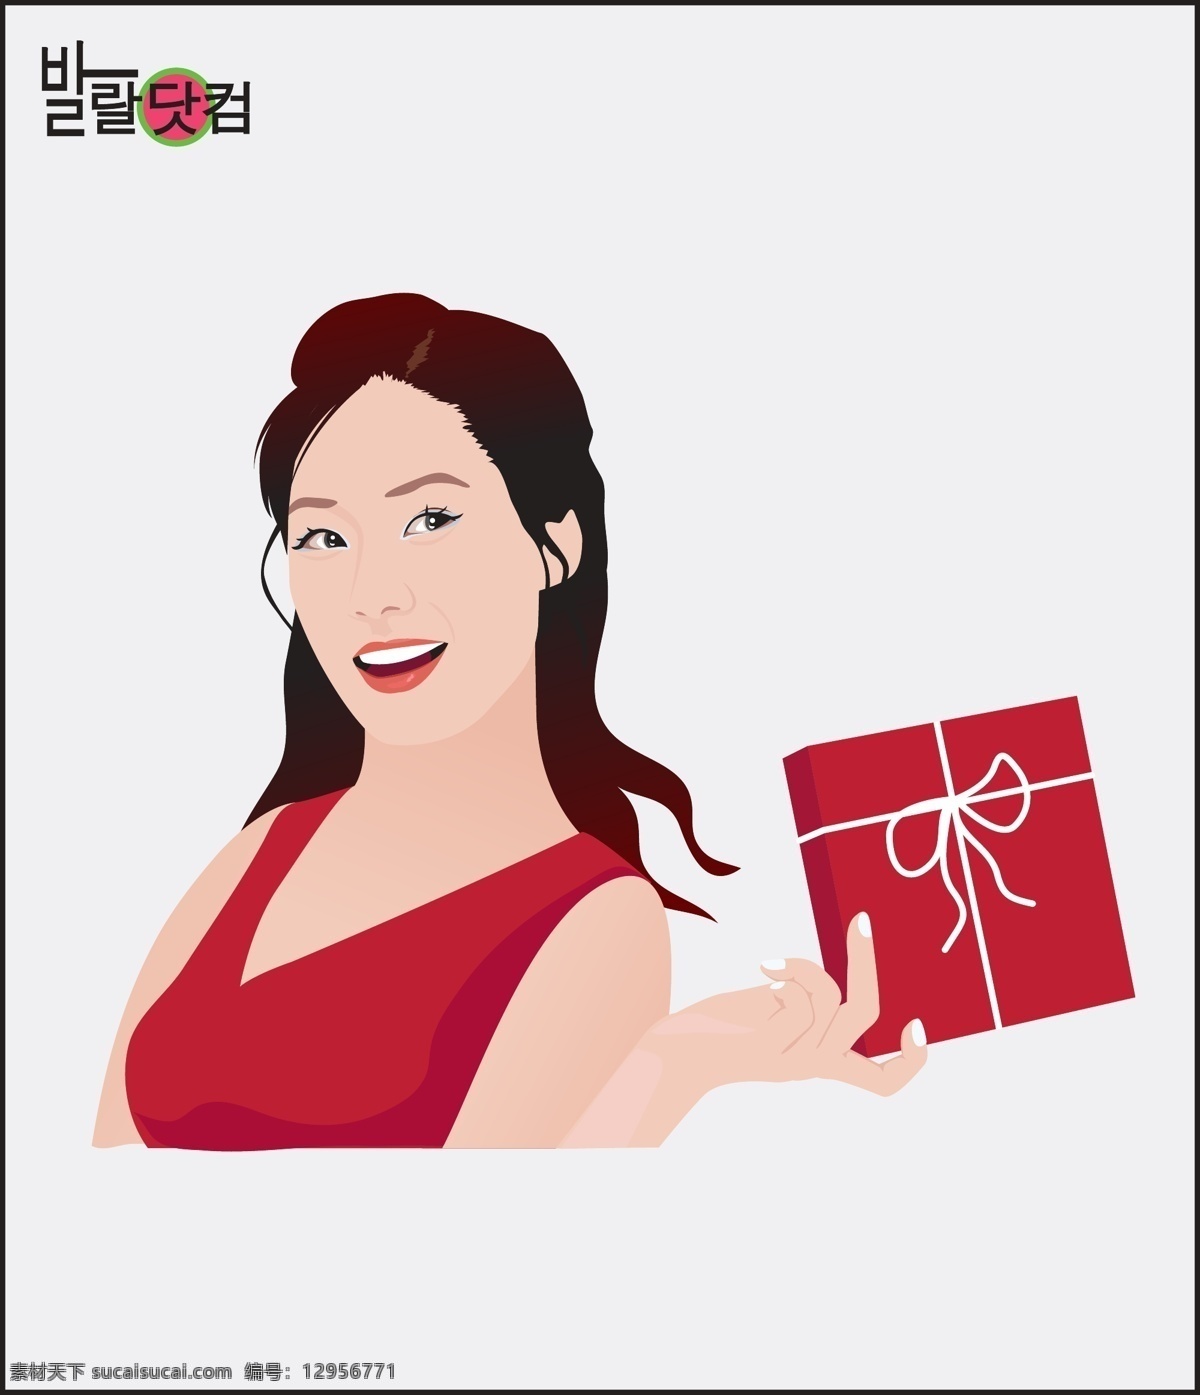 手 礼物 盒 展示 女人 长发 韩国素材 美女 女孩 手势 微笑 性感 高精 写实 矢量 销售 人物 销售人物 韩国 矢量图